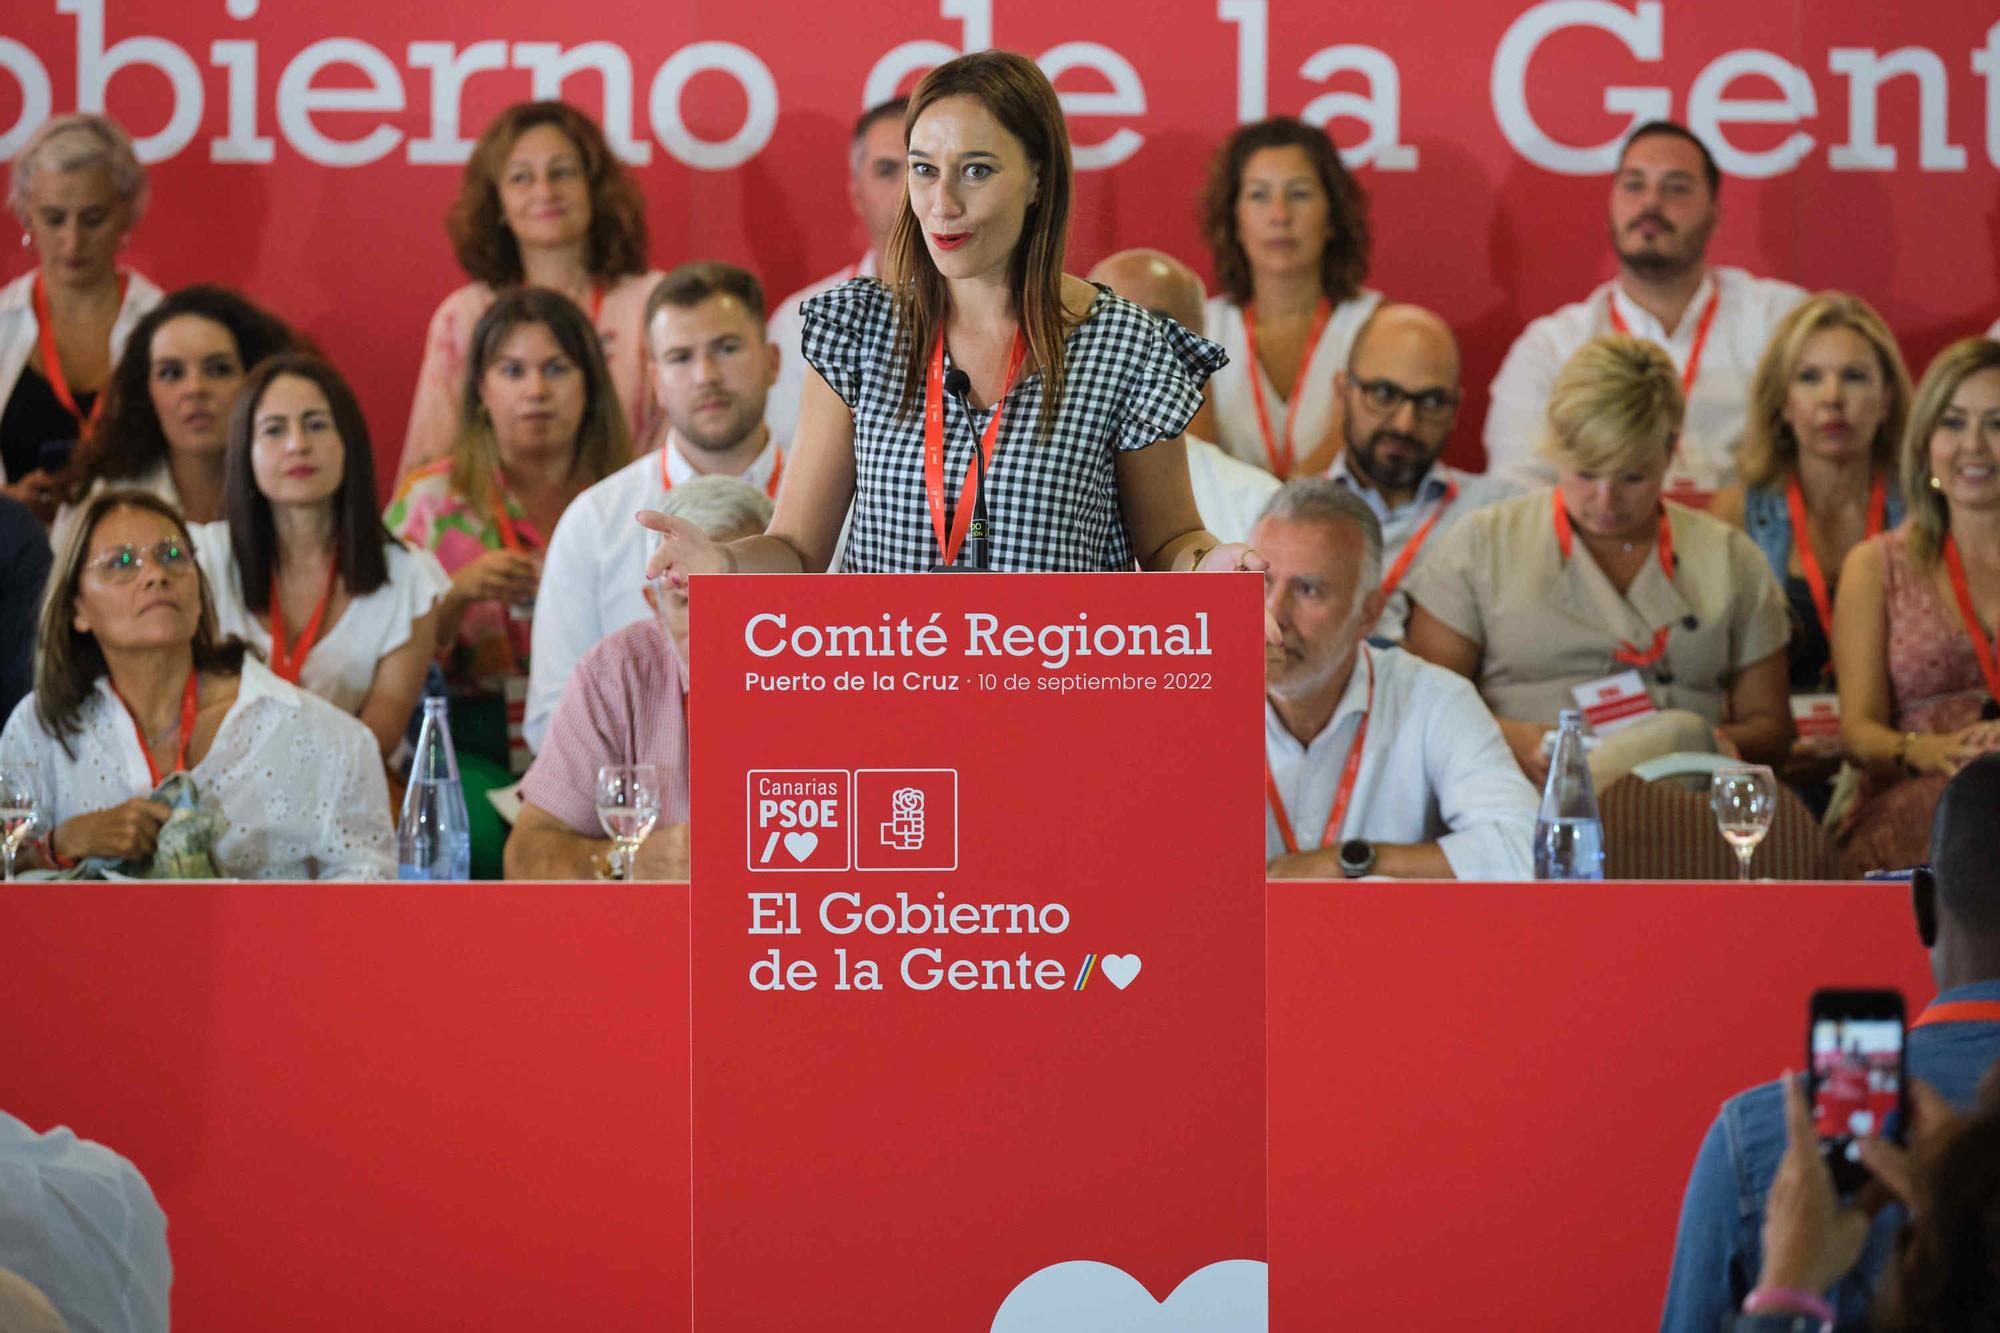 Comité Regional del PSOE de Canarias celebrado en Puerto de la Cruz